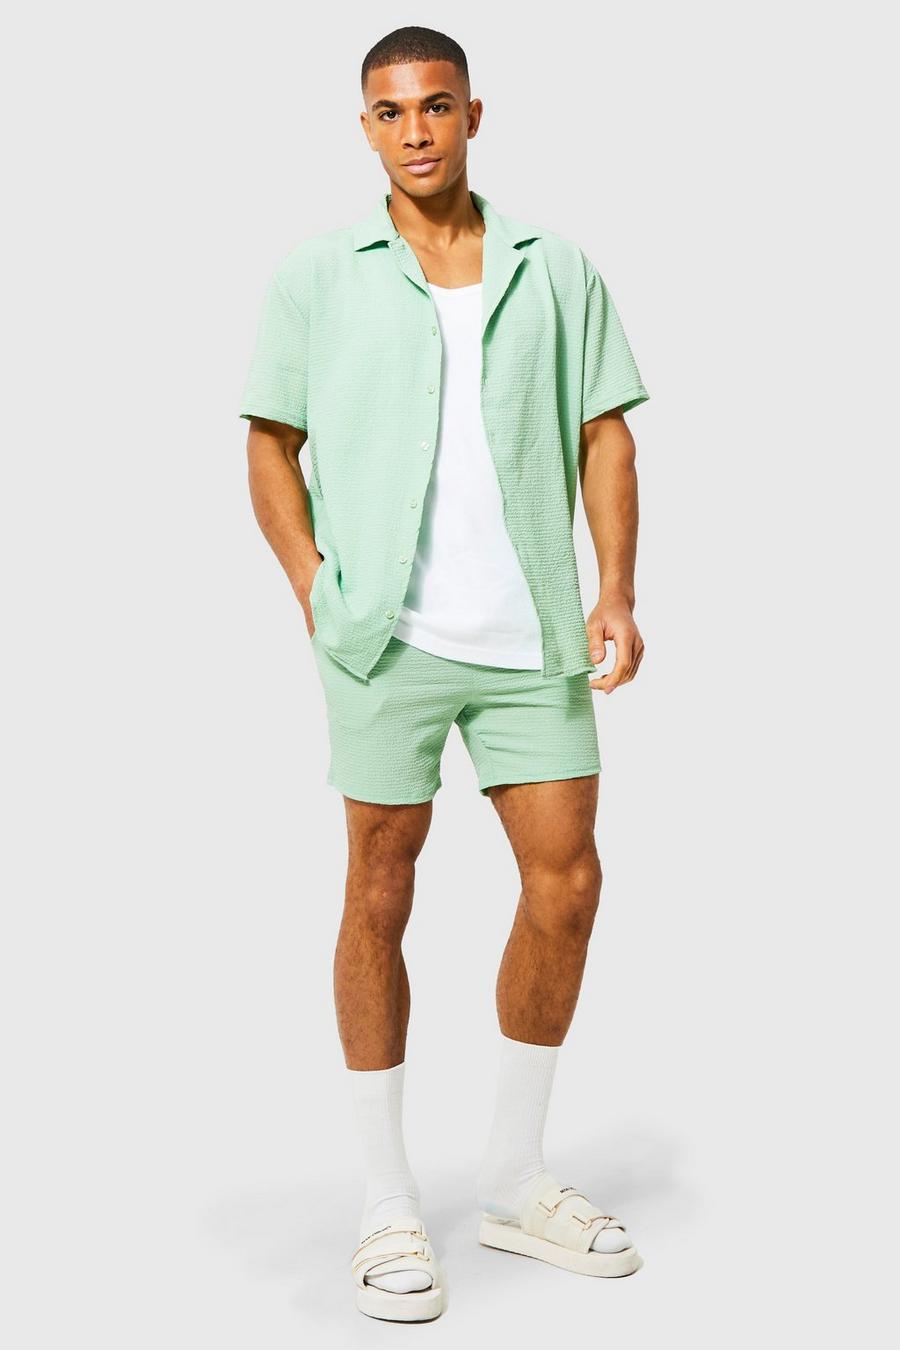 Light green Oversized Crinkle Shirt And Short